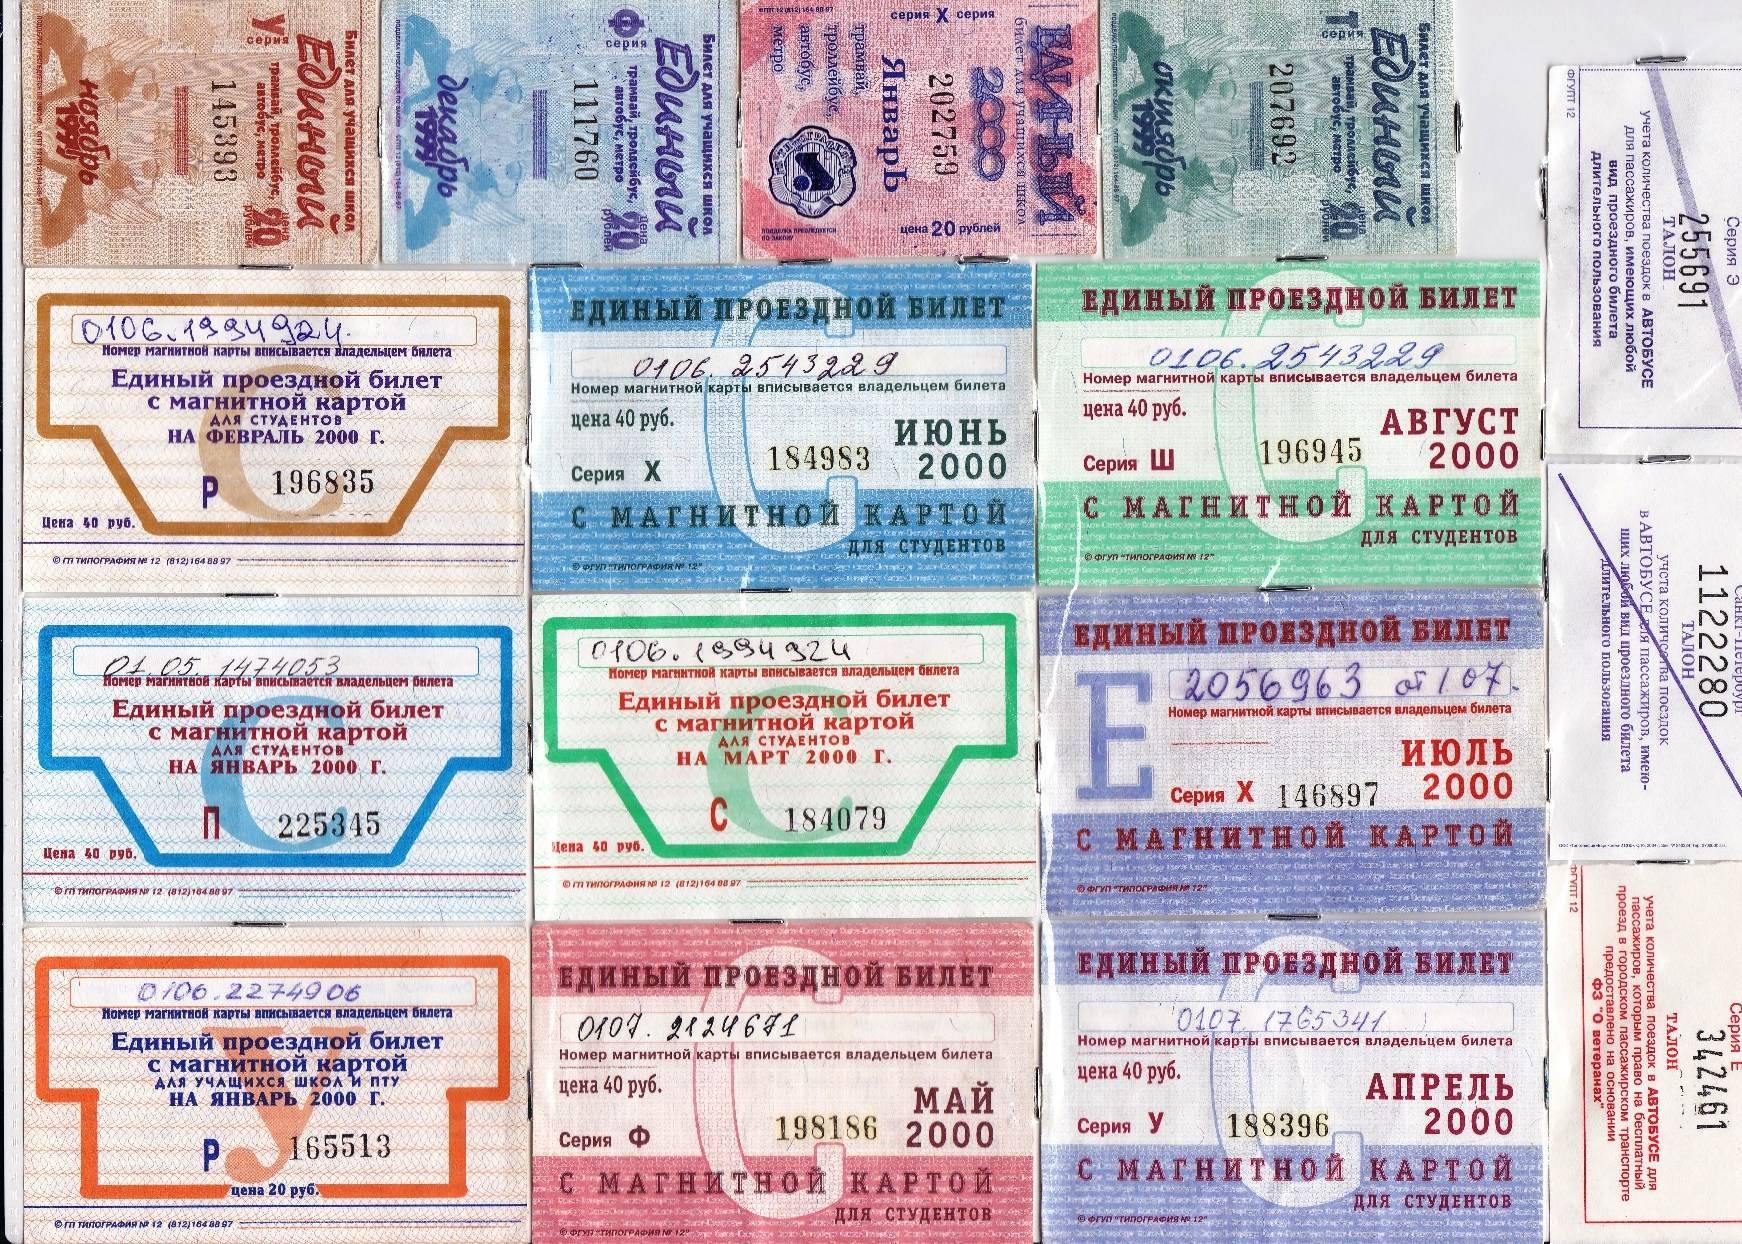 Как в москве сэкономить на проезде в метро и на общественном транспорте. как туристам сэкономить на транспорте в москве: виды билетов, самые выгодные проездные 2020